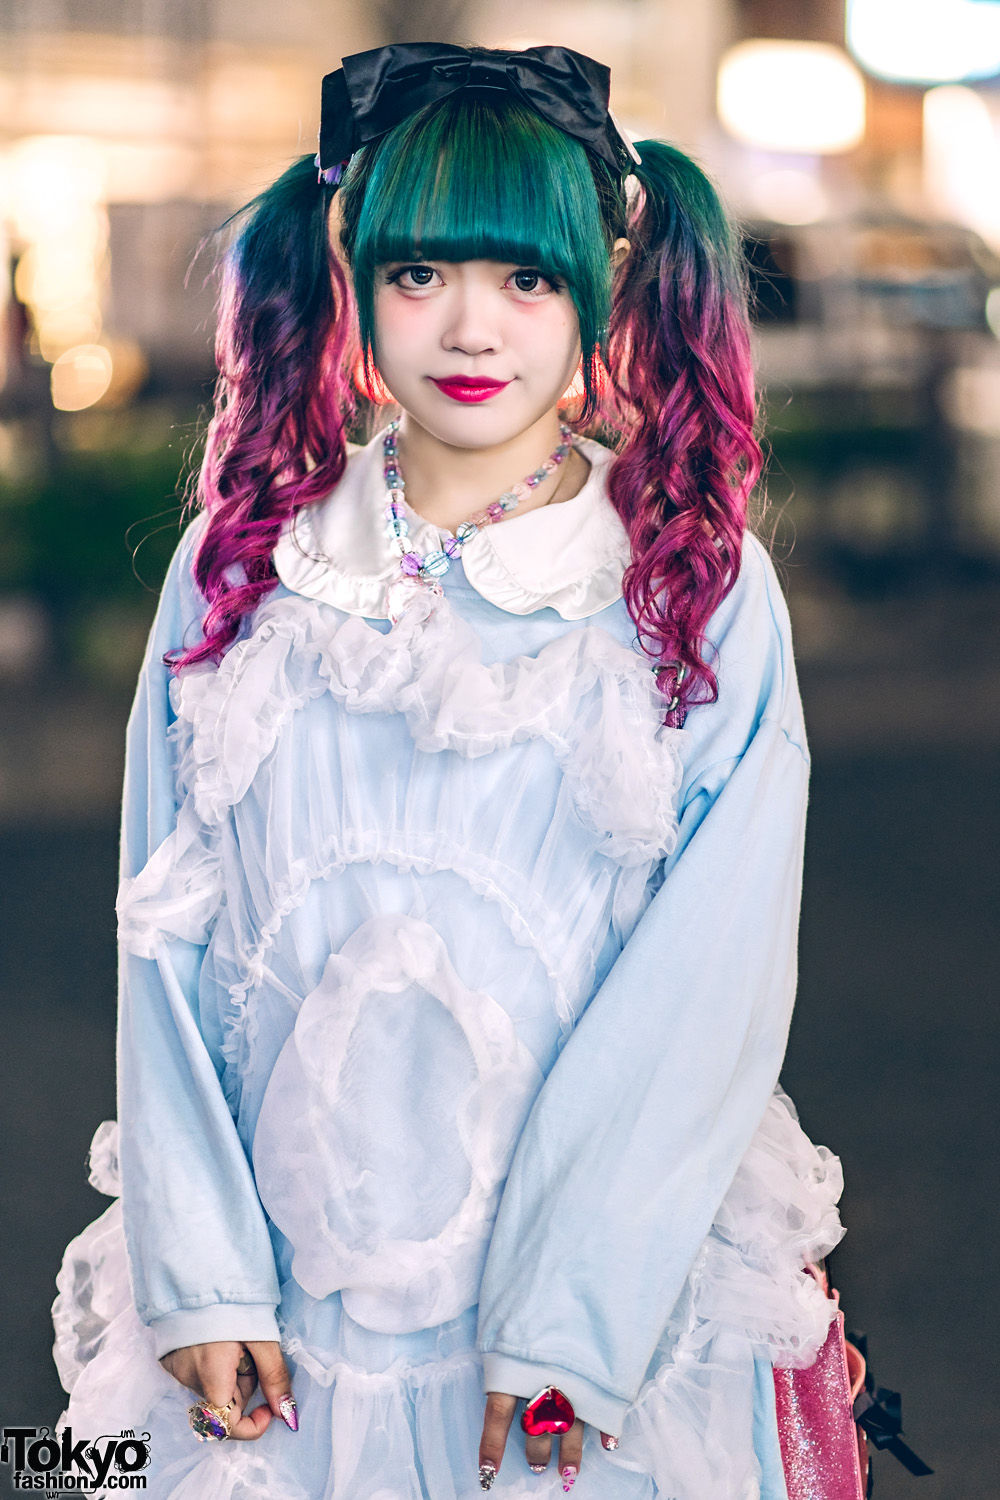 Kawaii hair accessories lucky bags | fukubukuro mystery box kawaii cute  pastel goth gothic fairy kei lolita hair accessoires clips punk